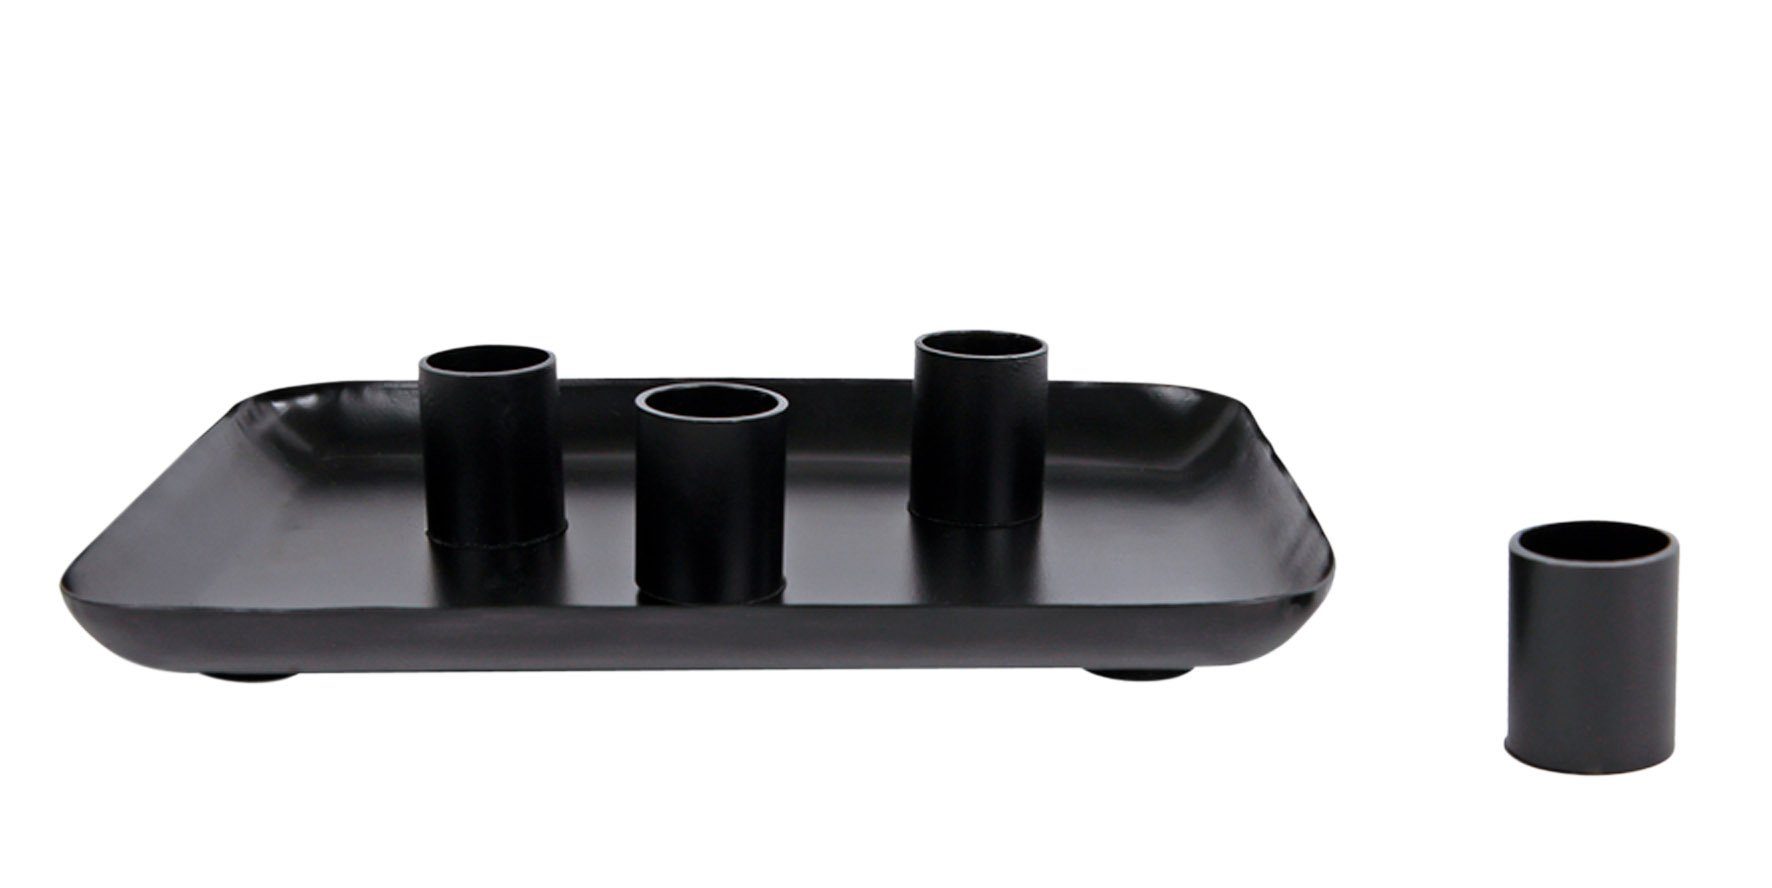 Tablett mit 4 Magnet Kerzenhaltern - ca. Ø 30 cm - Kerzentablett